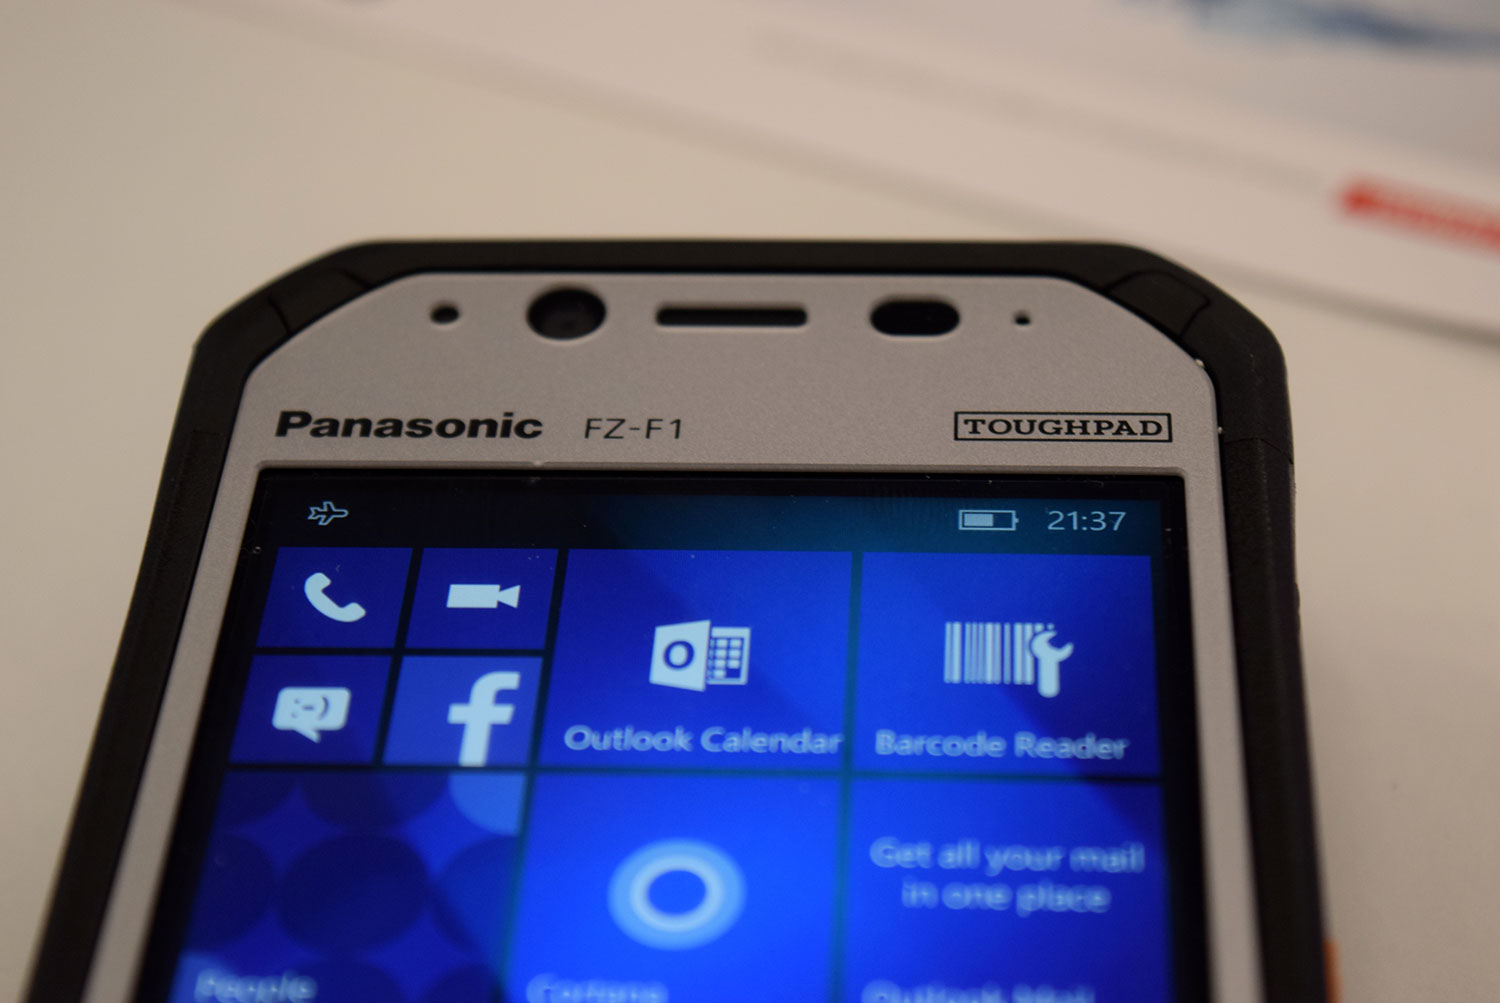 Panasonic F1 and N1